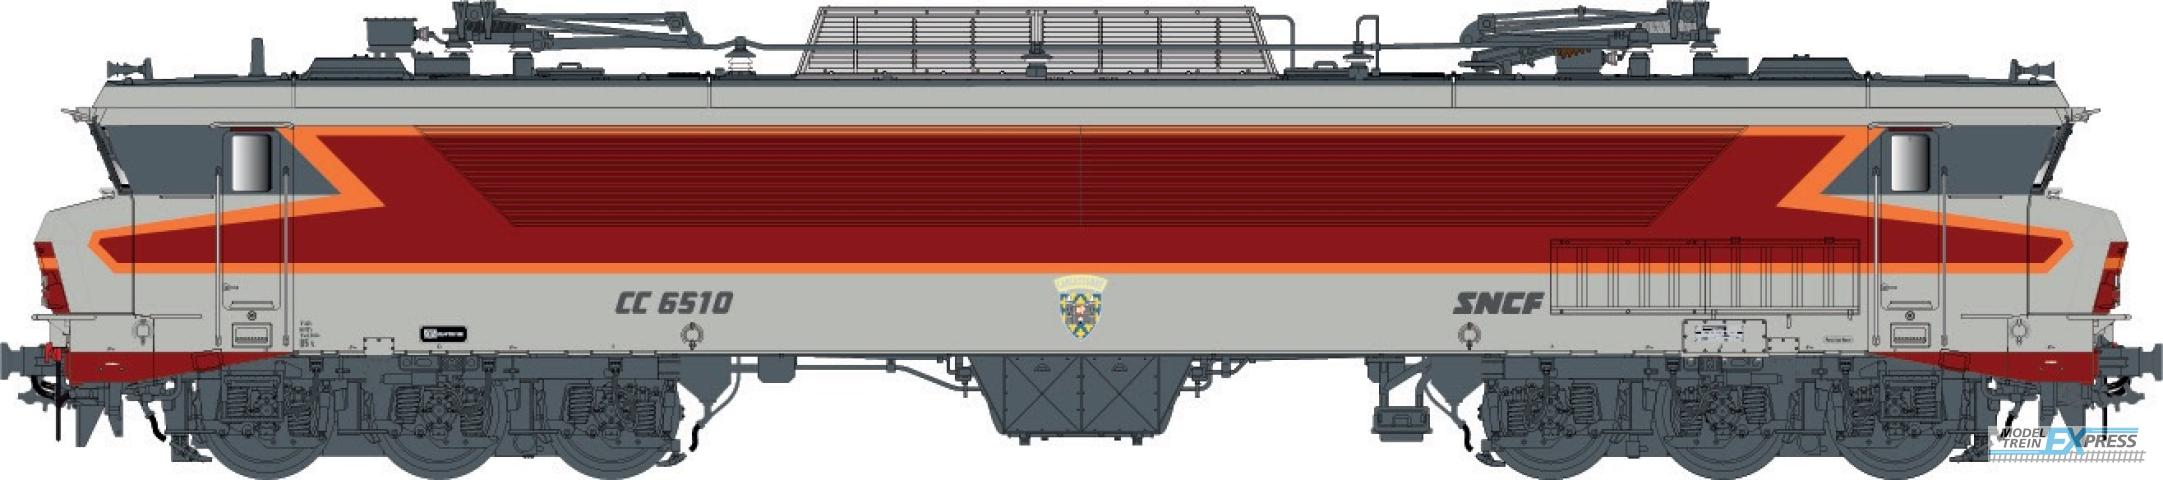 LS Models 10334 CC 6510, grey/red/orange, livery ARZENS, logo RMT  /  Ep. IV-V  /  SNCF  /  HO  /  DC  /  1 P.